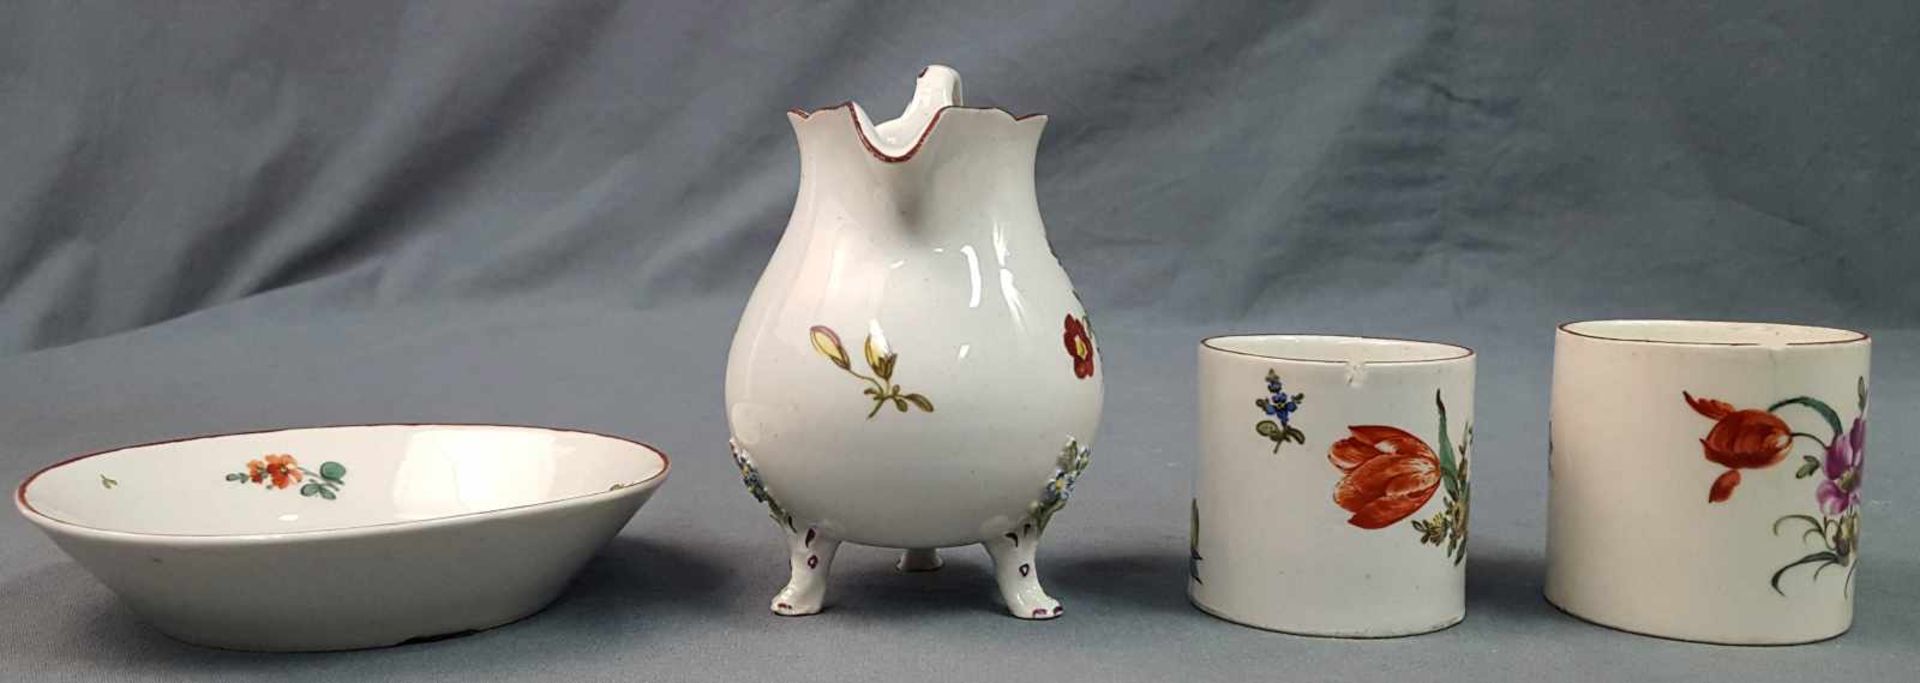 Ludwigsburg porcelain. 2 cups, saucer, milk jug. - Image 5 of 8